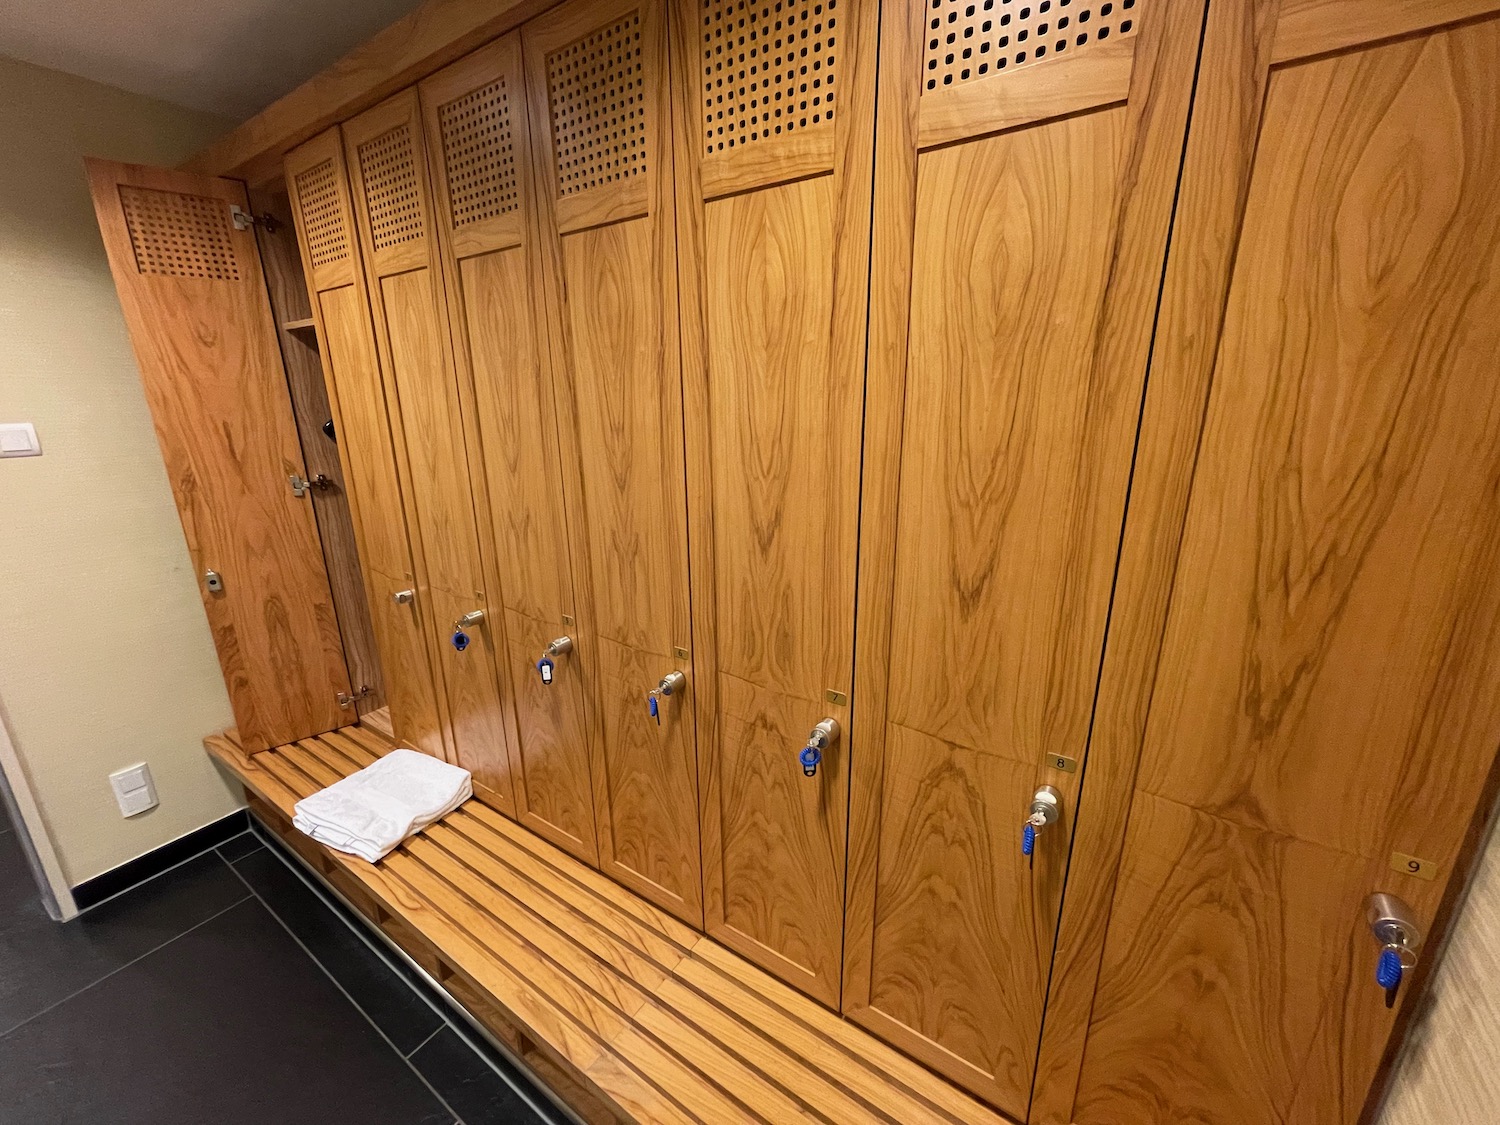 a wooden lockers in a locker room